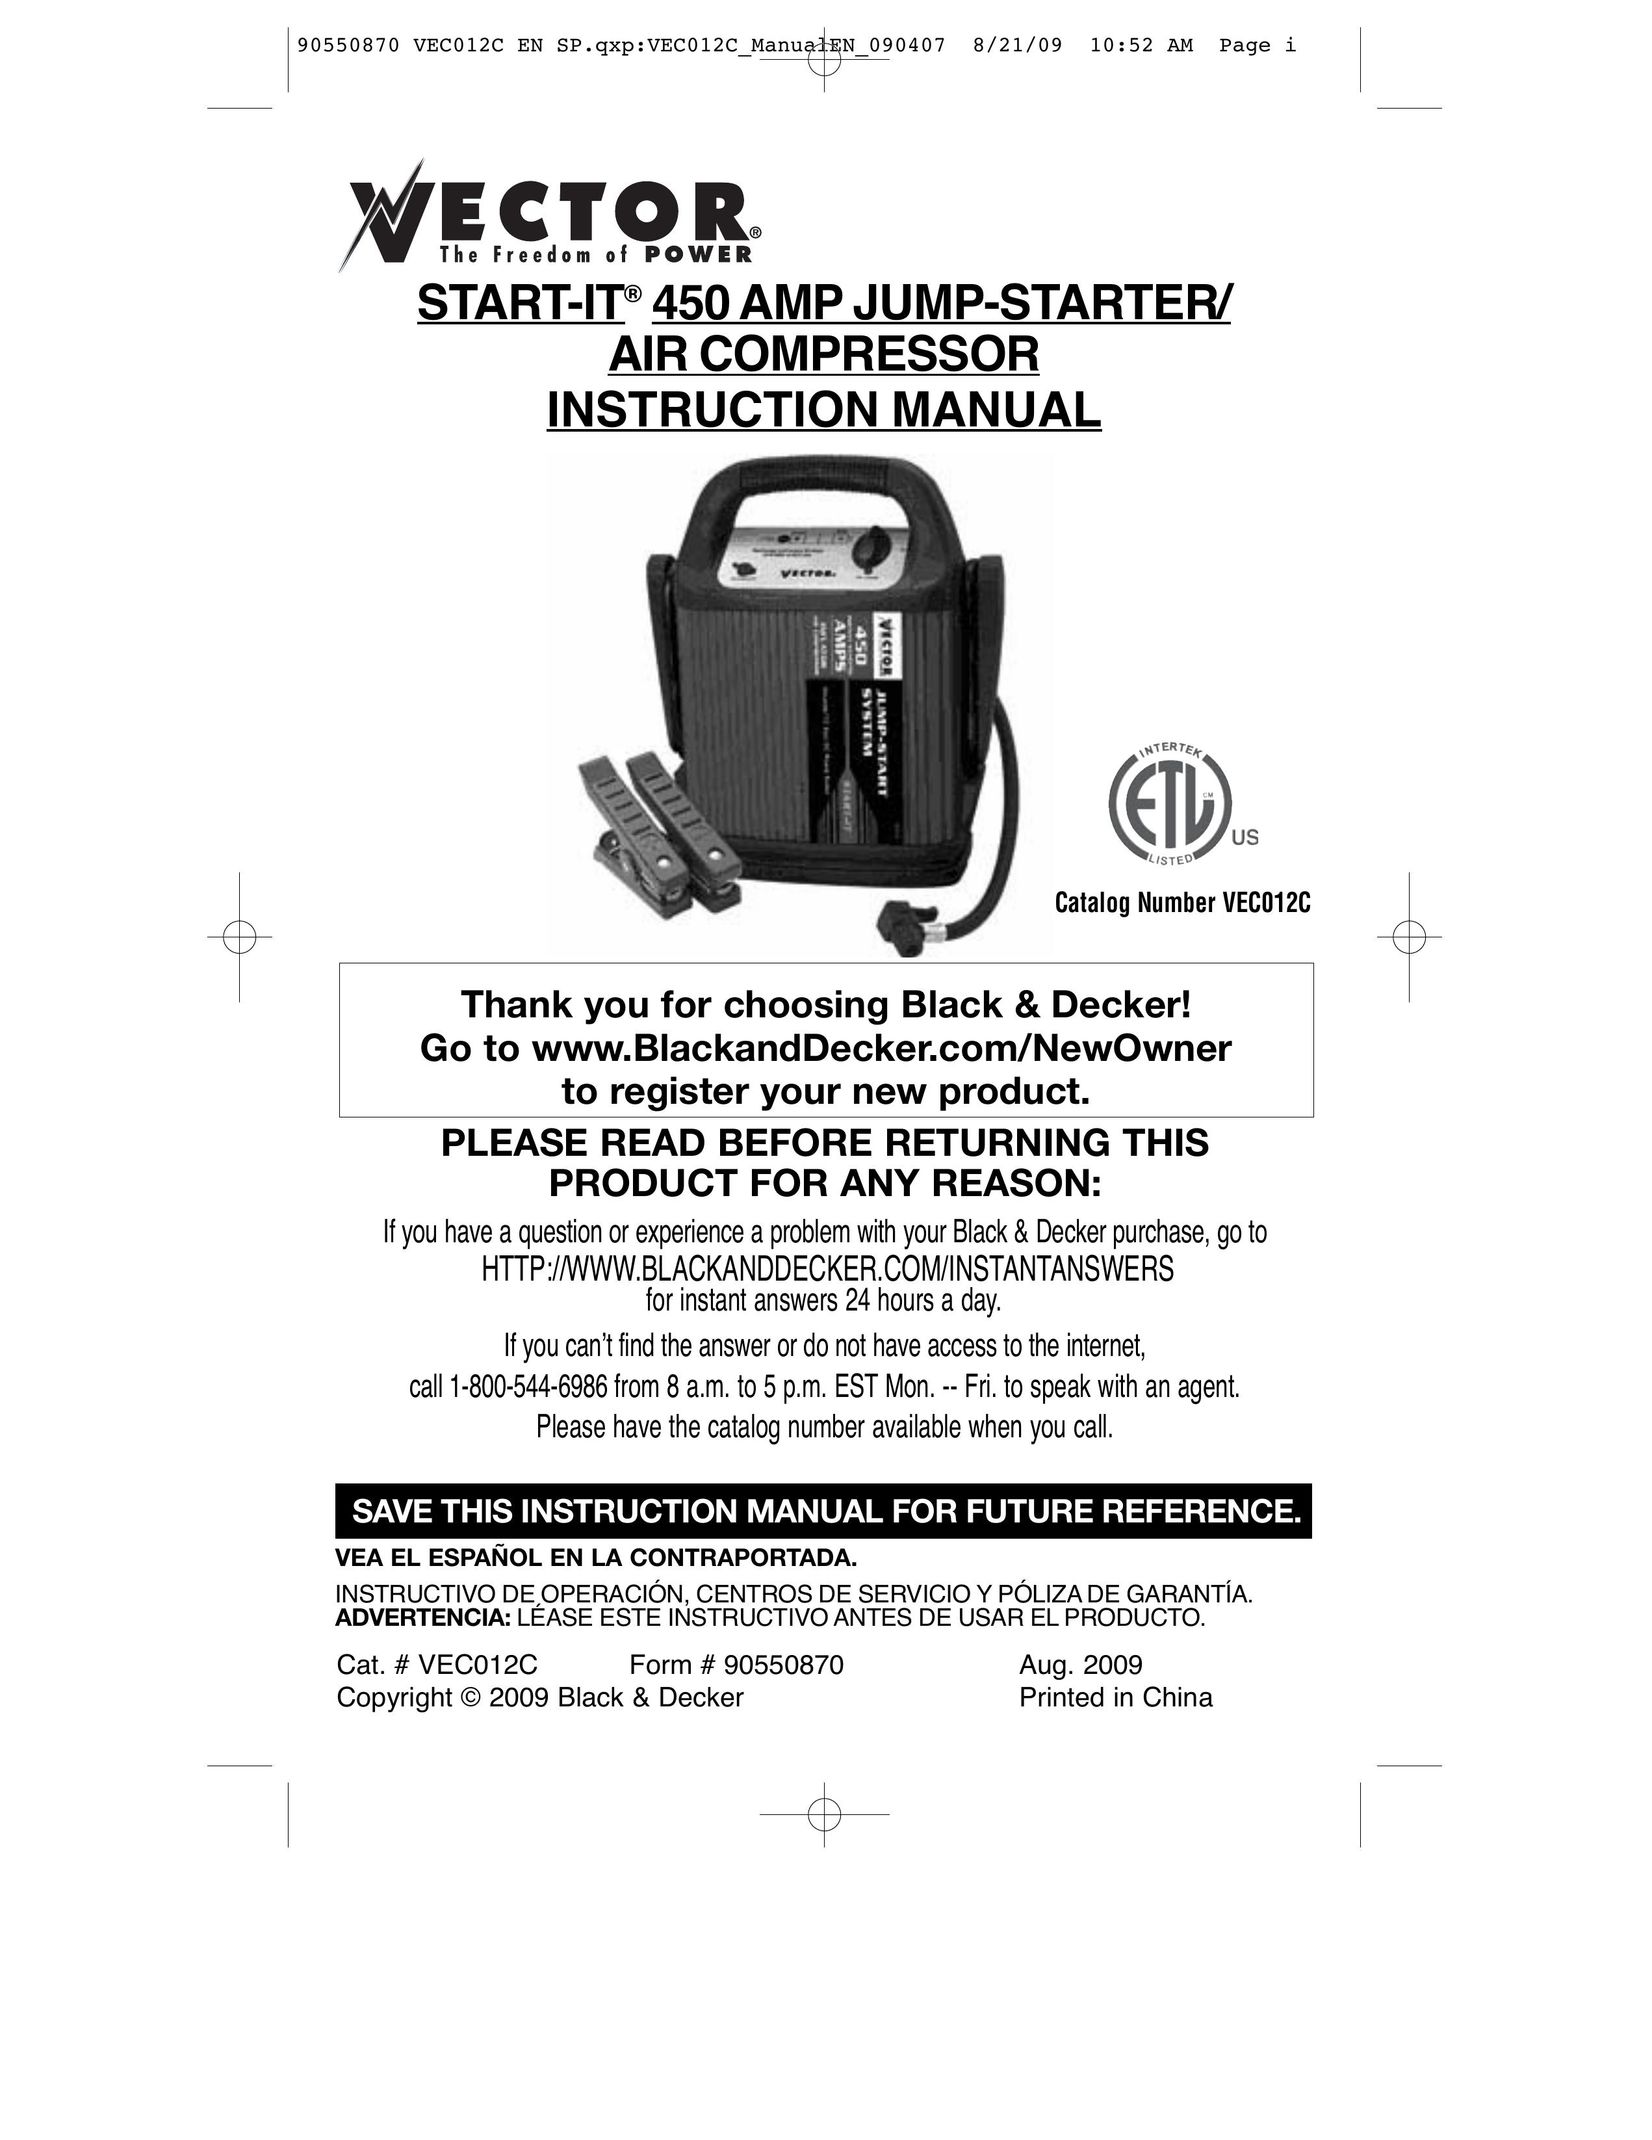 Black & Decker VEC012C Air Compressor User Manual